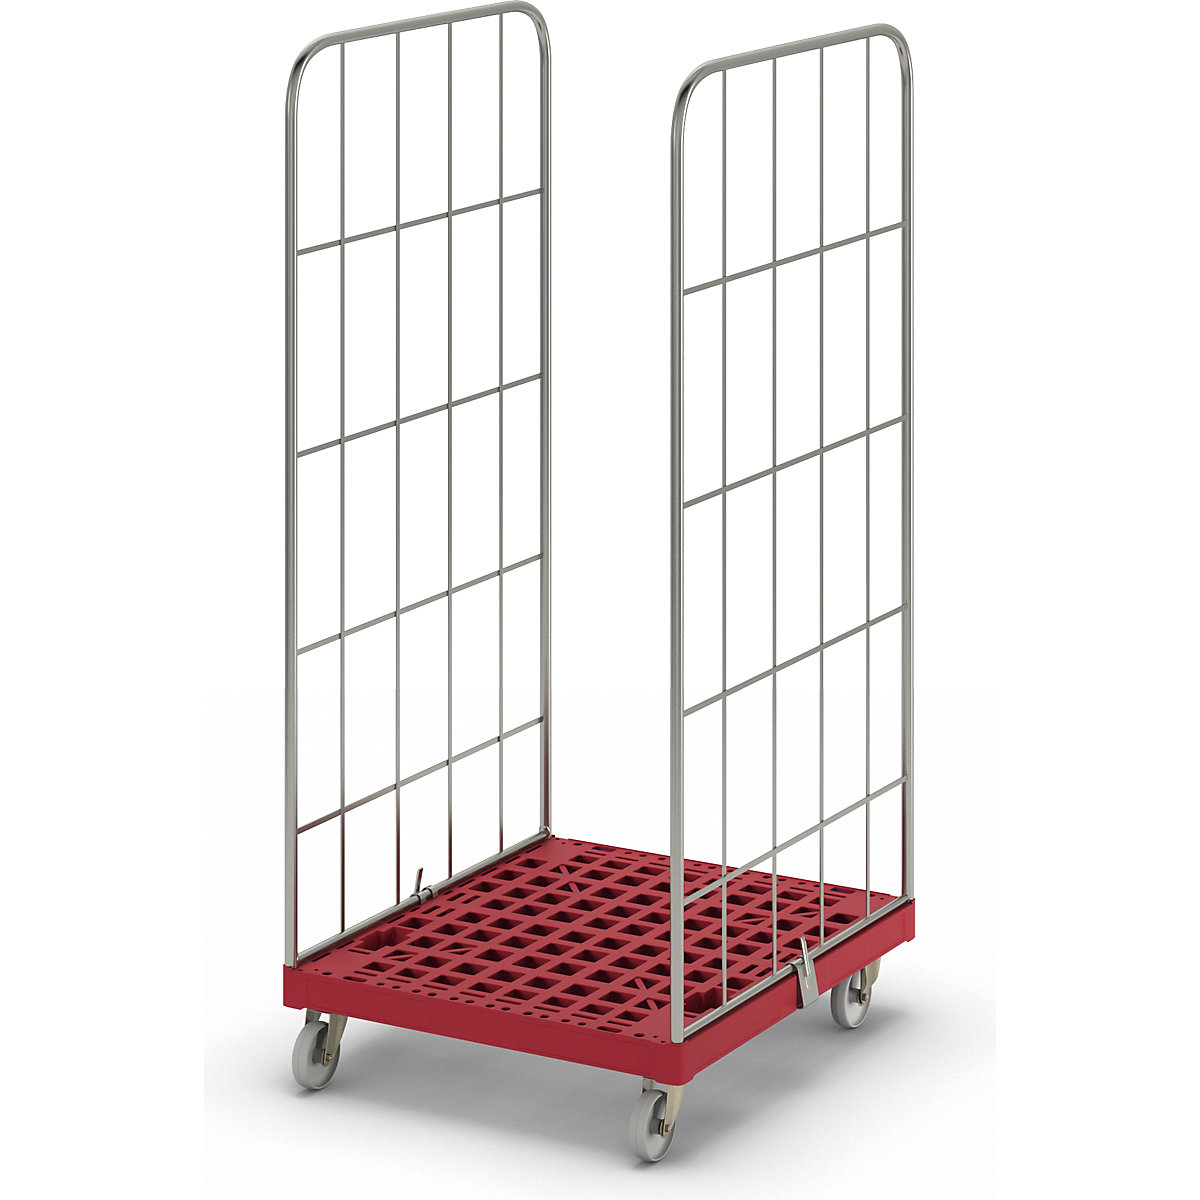 Contentor rolante MODULAR, plataforma rolante em plástico, grade de 2 lados, placa vermelha-2